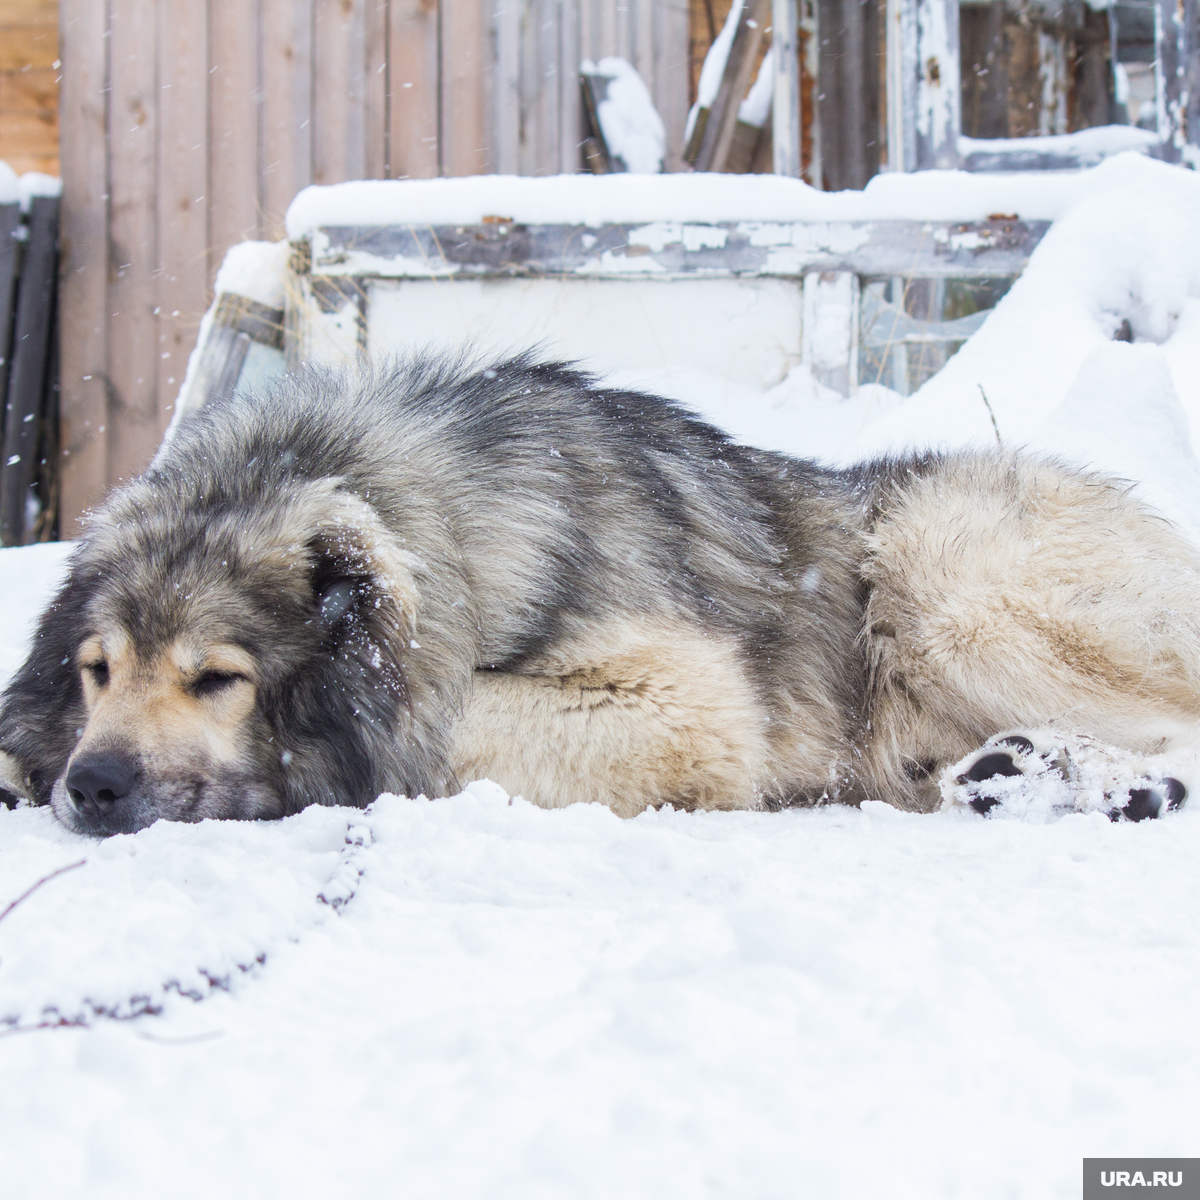 В селе Белоево Пермского края пес принес хозяевам голову соседа